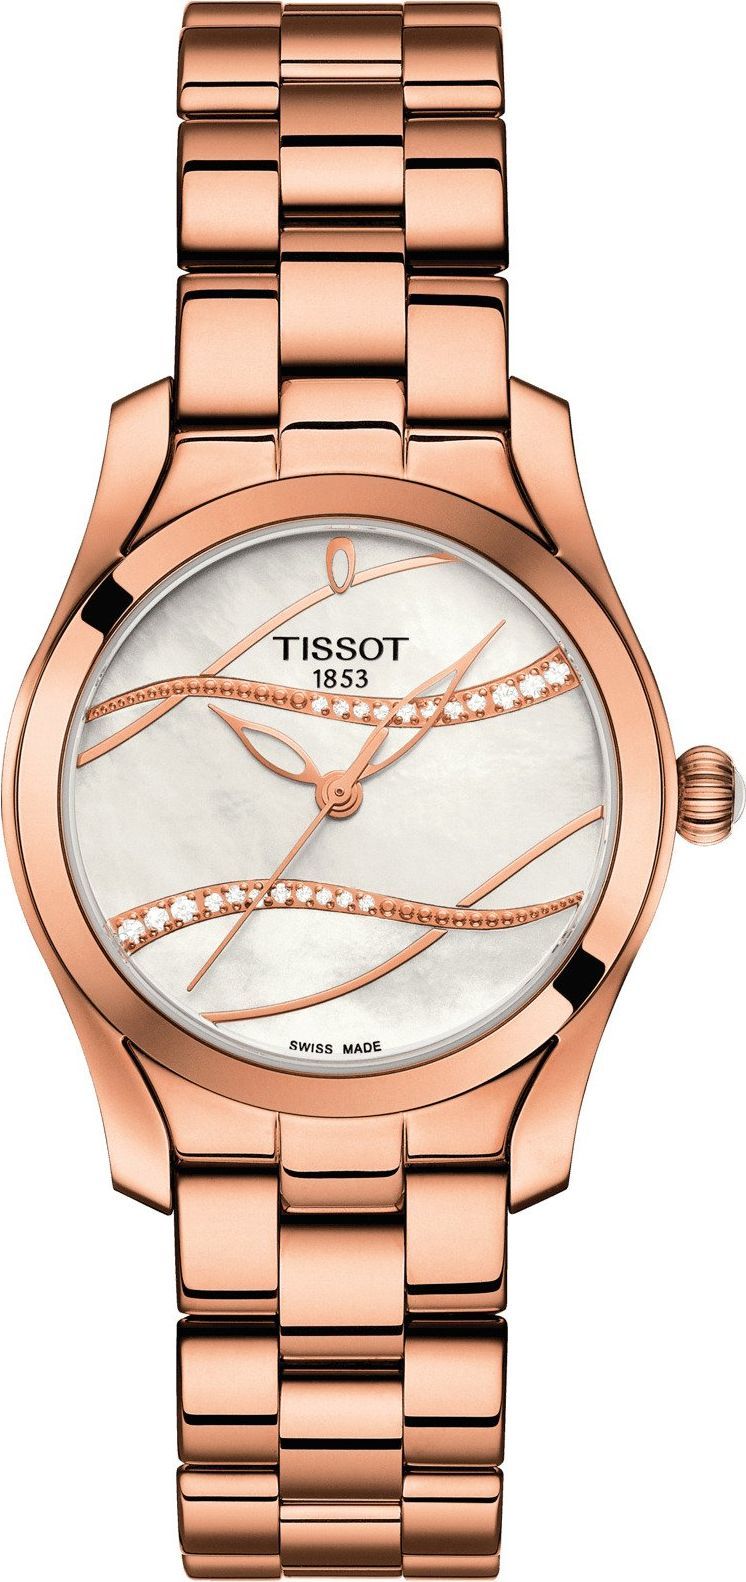 Tissot T-Lady Tissot T-Wave MOP Dial 30 mm Quartz Watch For Women - 1